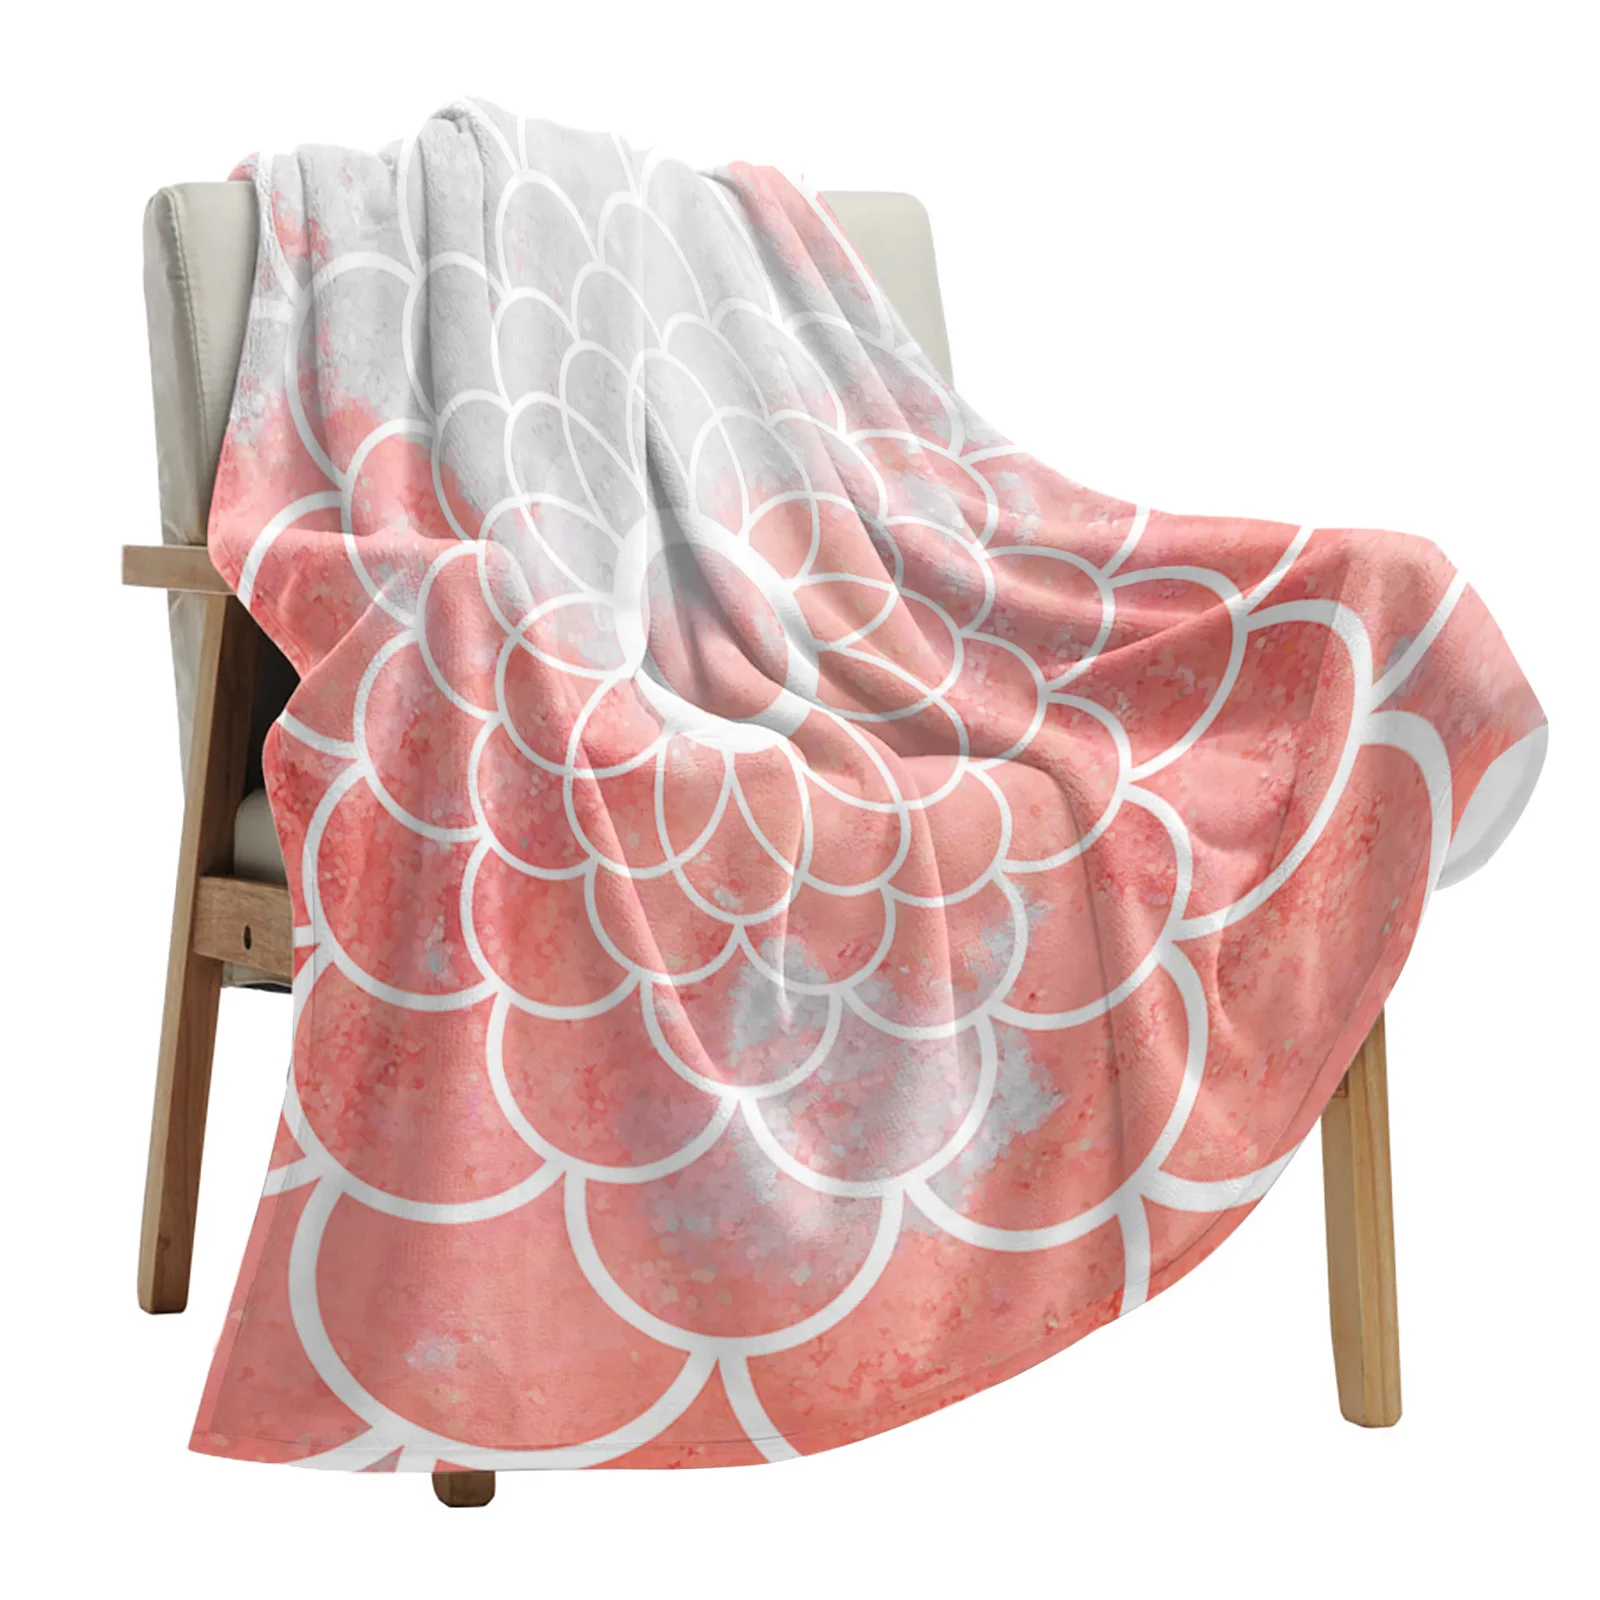 

Одеяло с абстрактной цветочной текстурой, портативное мягкое Фланелевое покрывало для кровати, офиса, одеяло розового цвета с рисунком масляной живописи